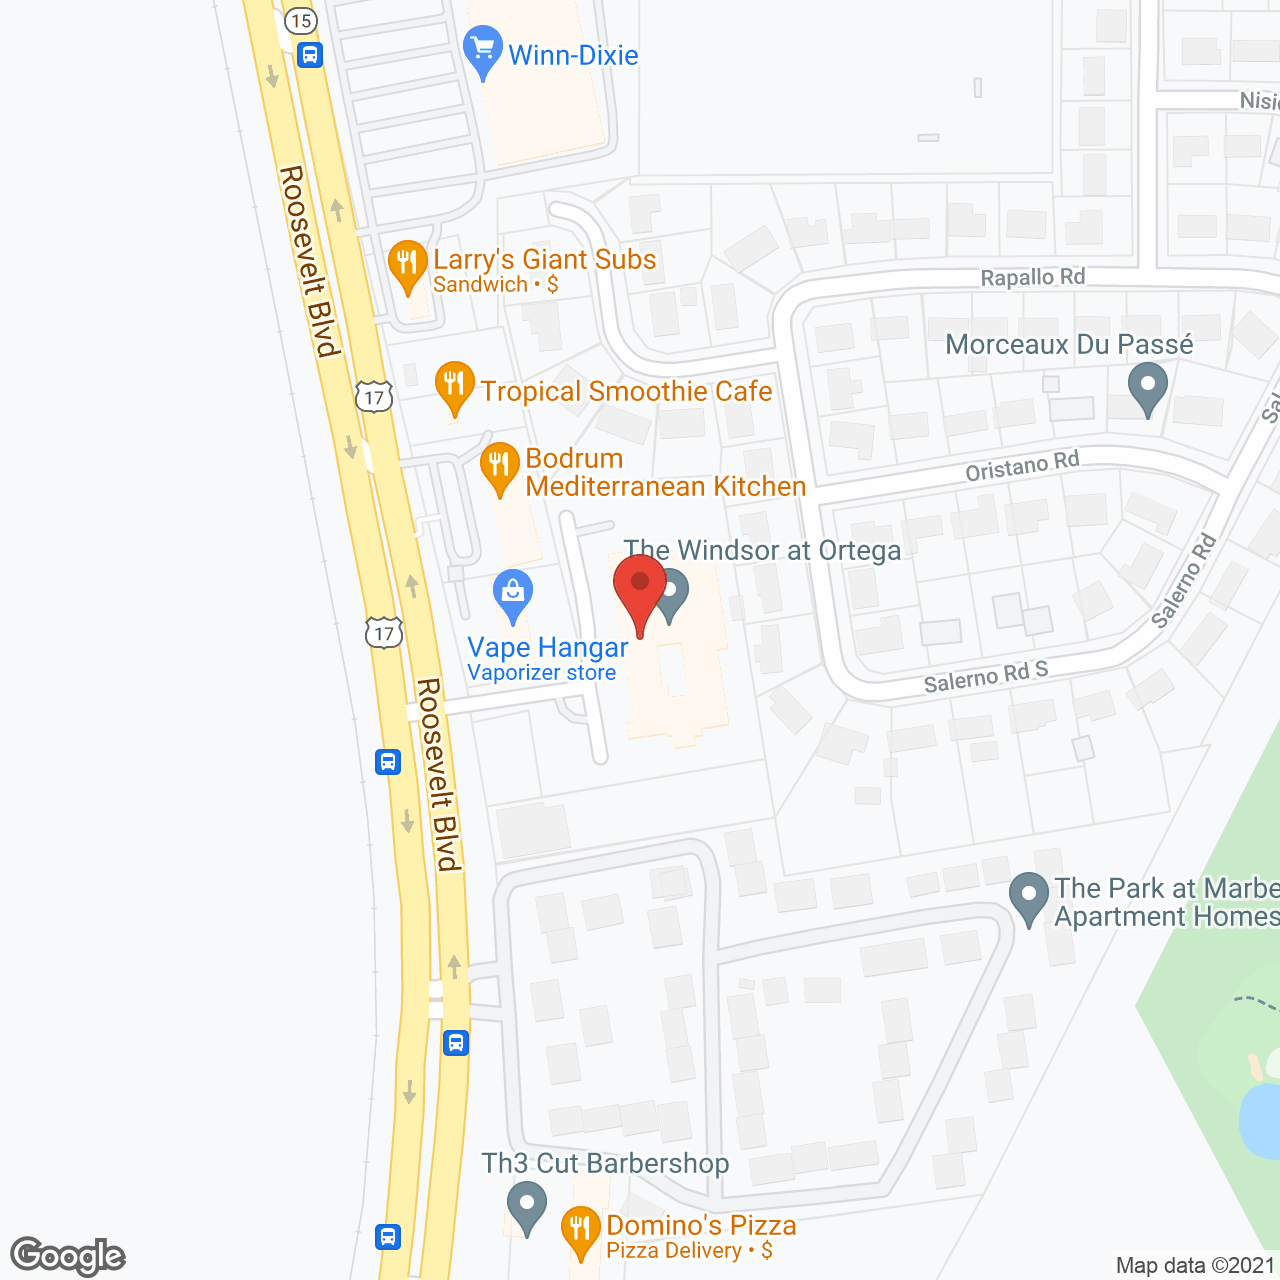 The Windsor at Ortega in google map